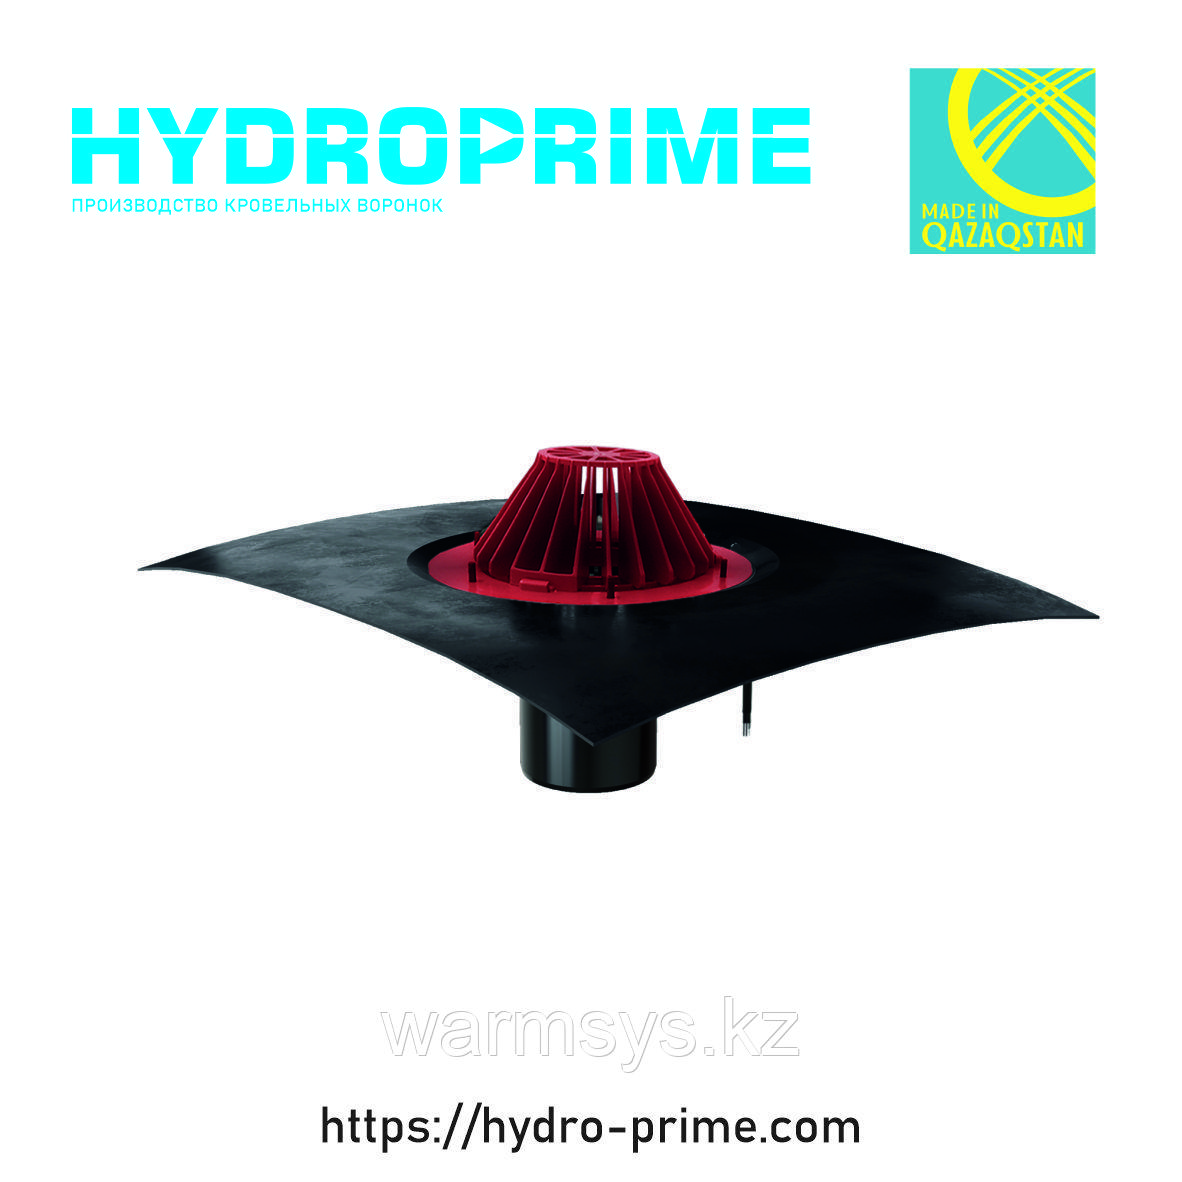 Кровельная воронка HydroPrime HPH 110x165 с обогревом и битумным полотном